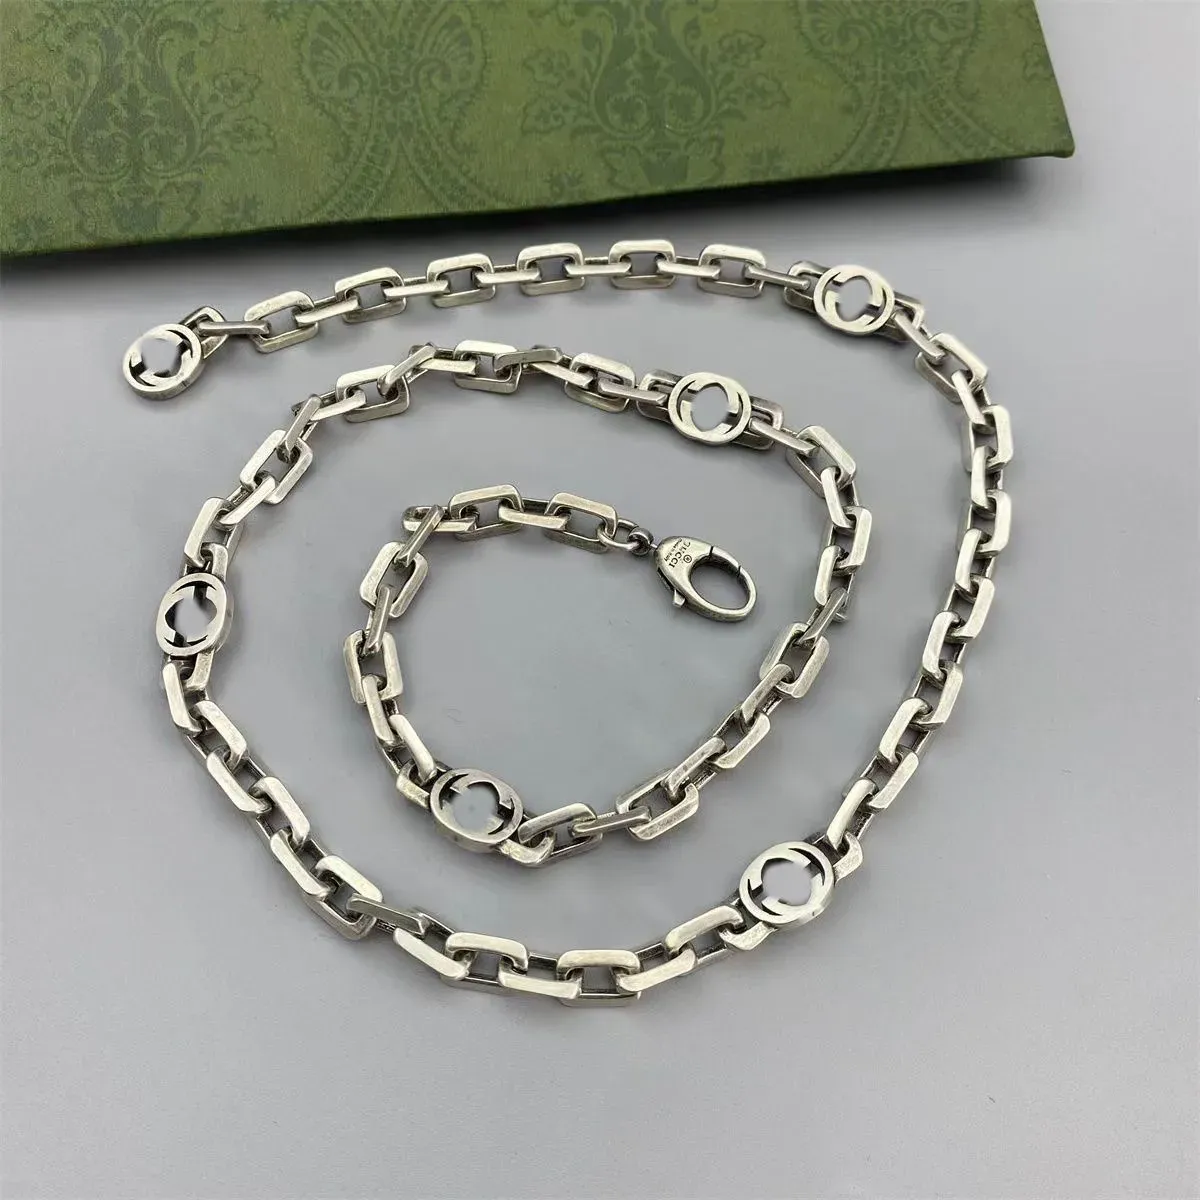 Designad av Luxury Master 925 Sterling Silver Necklace G Jewelry Fashion Halsband är den föredragna modetillbehören för bröllopsfestresor